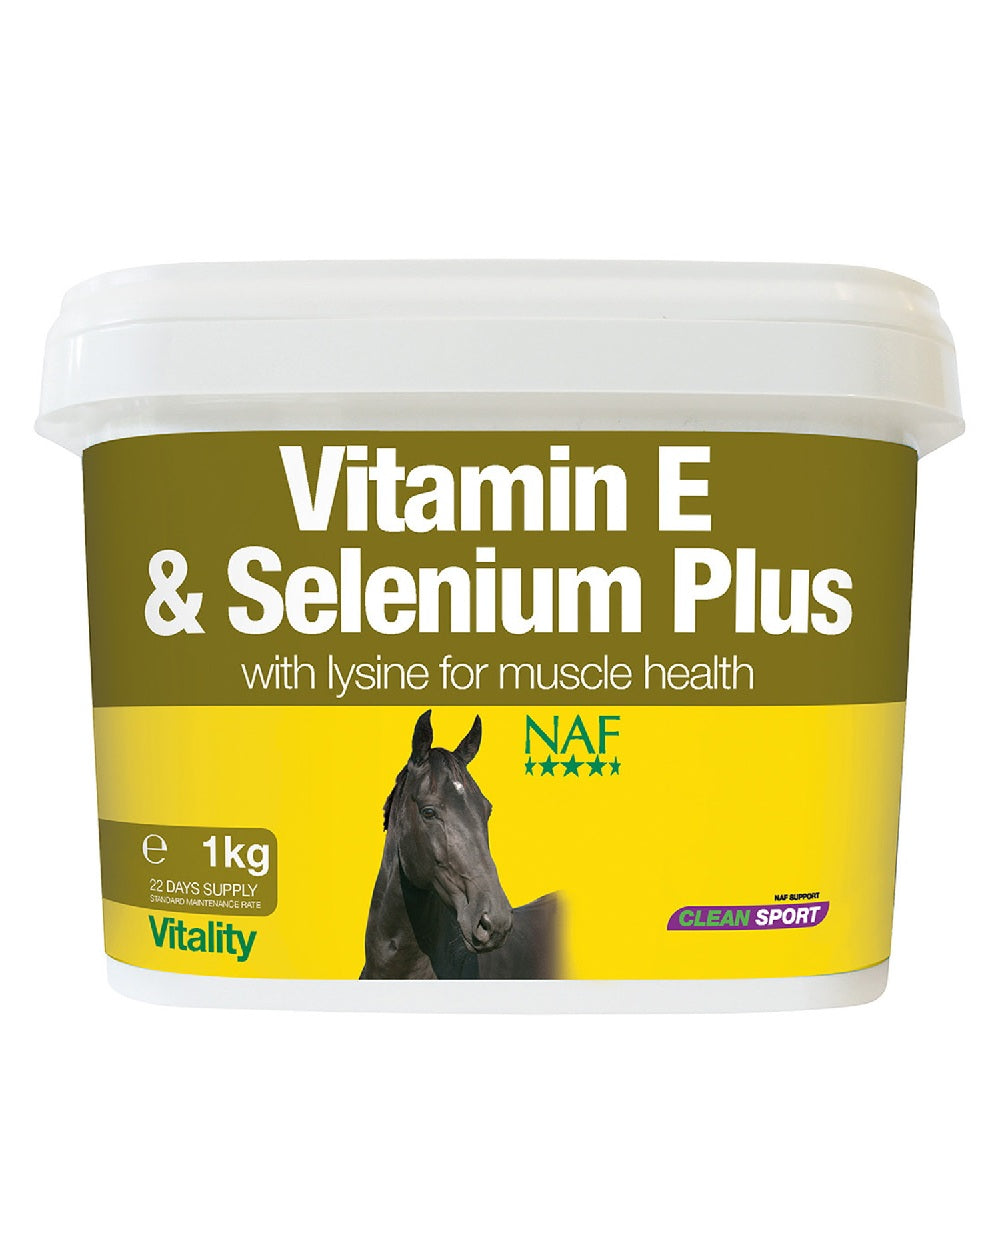 NAF Vitamin E &amp; Selenium Plus 1kg on white background